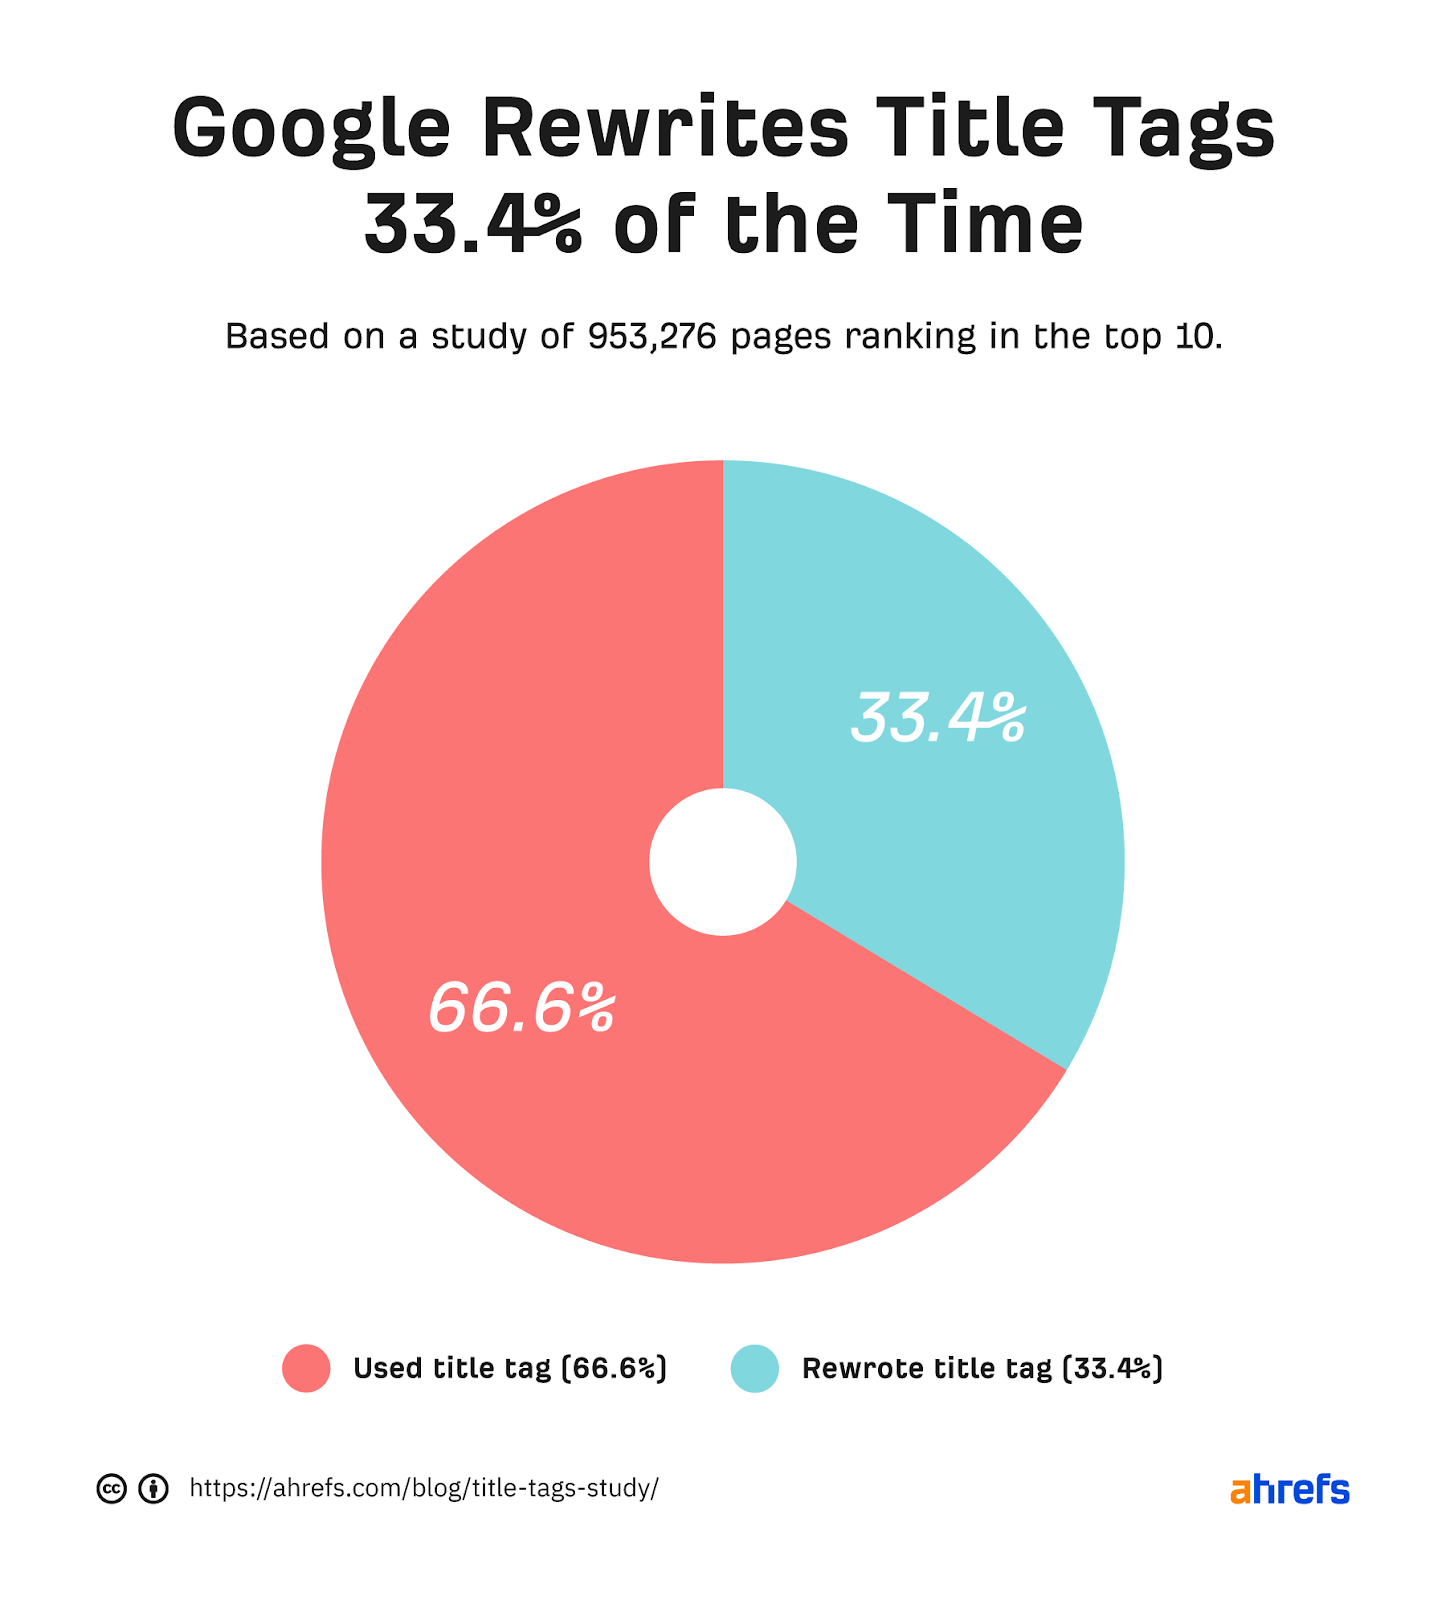 Gráfico circular que muestra que Google usa etiquetas de título el 66,6% del tiempo, las reescribe el 33,4% del tiempo